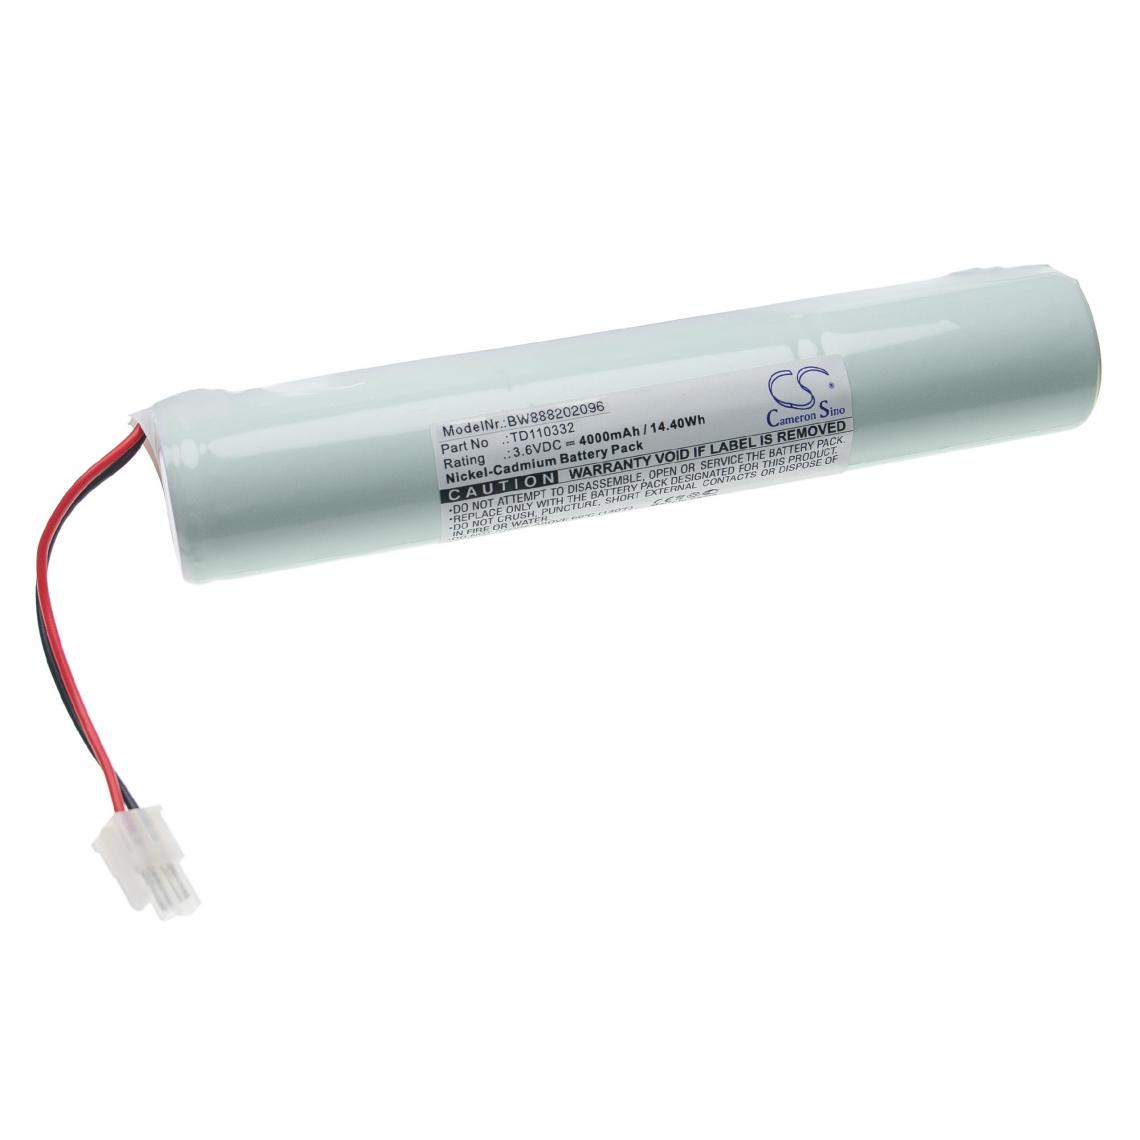 Vhbw - vhbw Batterie remplacement pour Schneider TD110332 pour éclairage d'issue de secours (4000mAh, 3,6V, NiCd) - Autre appareil de mesure